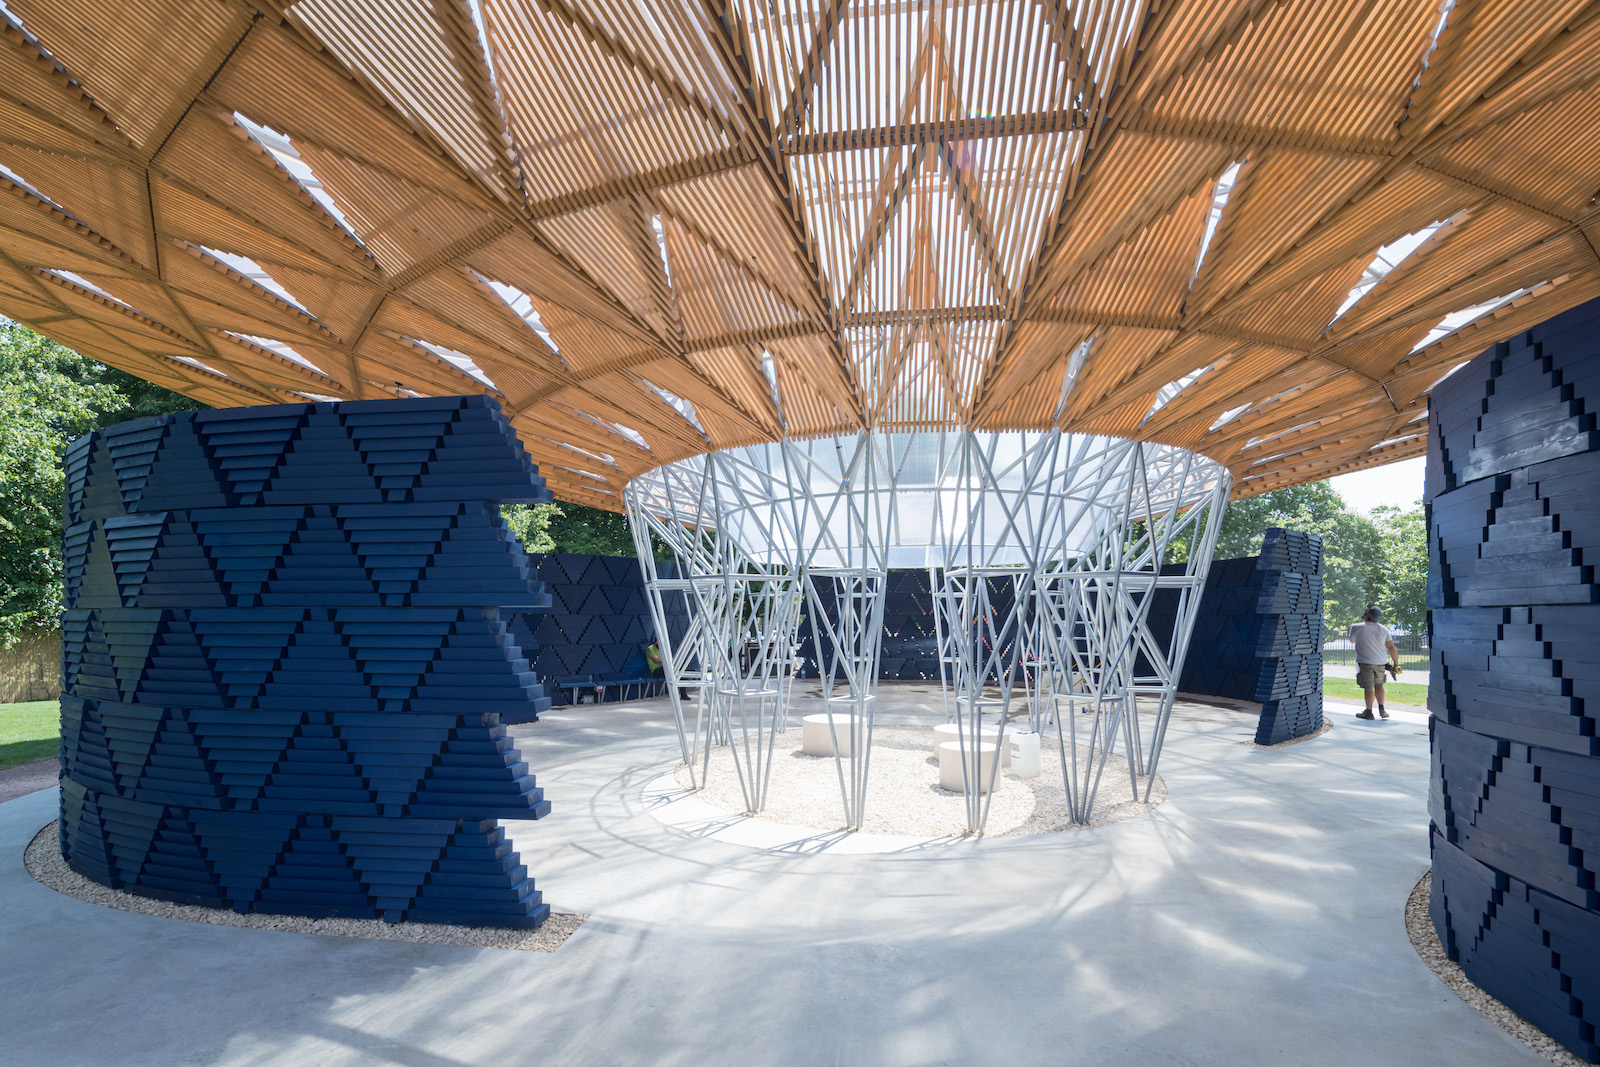 Diébédo Francis Kéré's open-air pavilion for the Serpentine Gallery